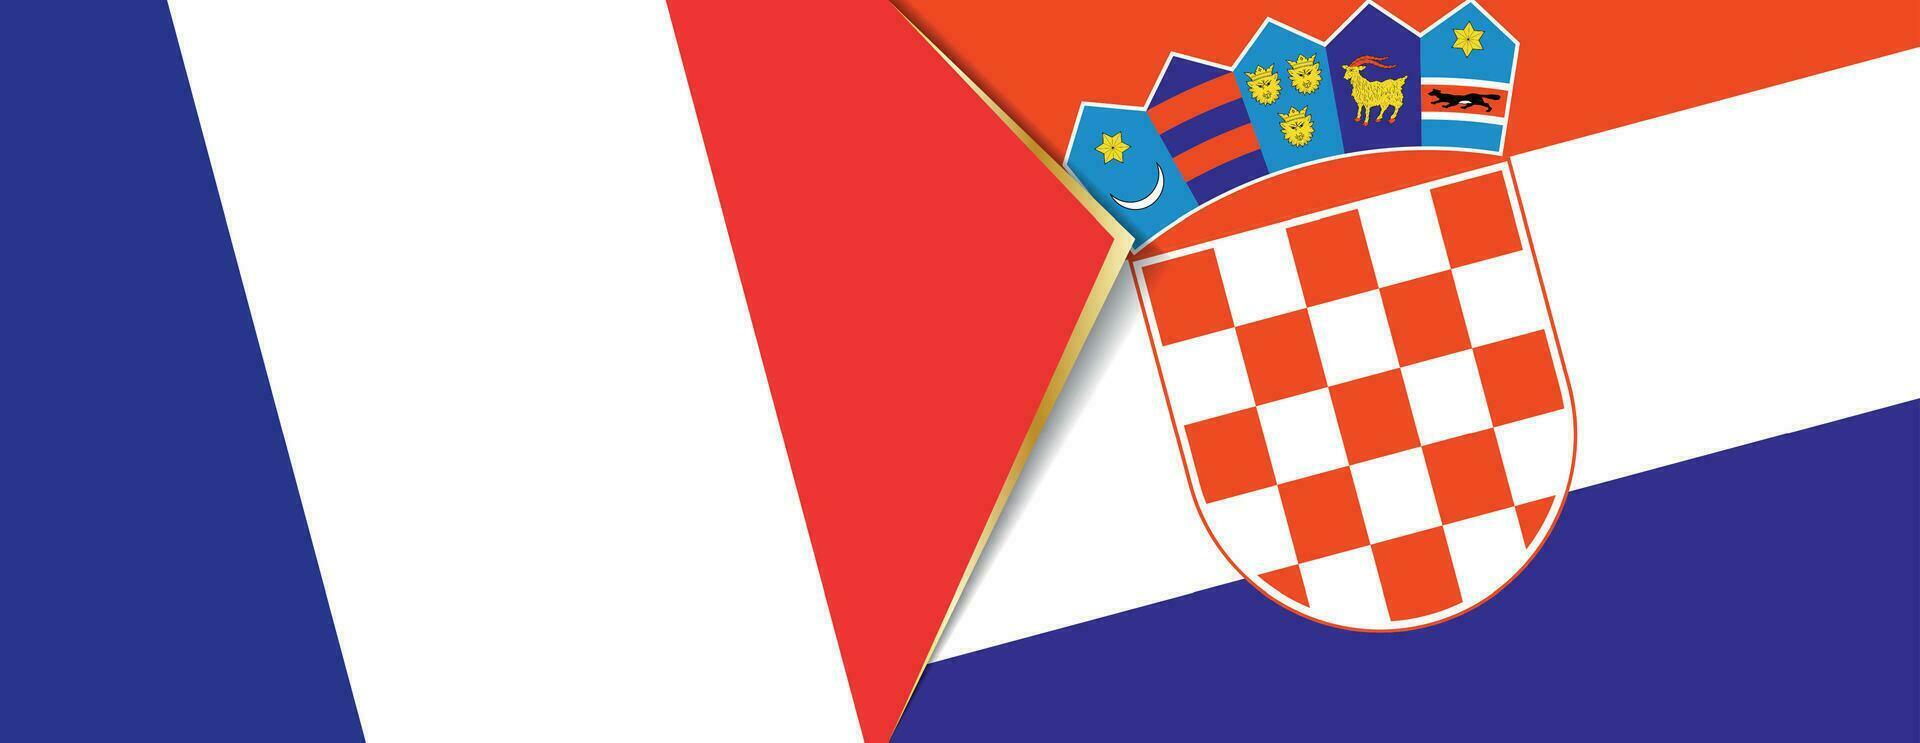 Frankrike och kroatien flaggor, två vektor flaggor.